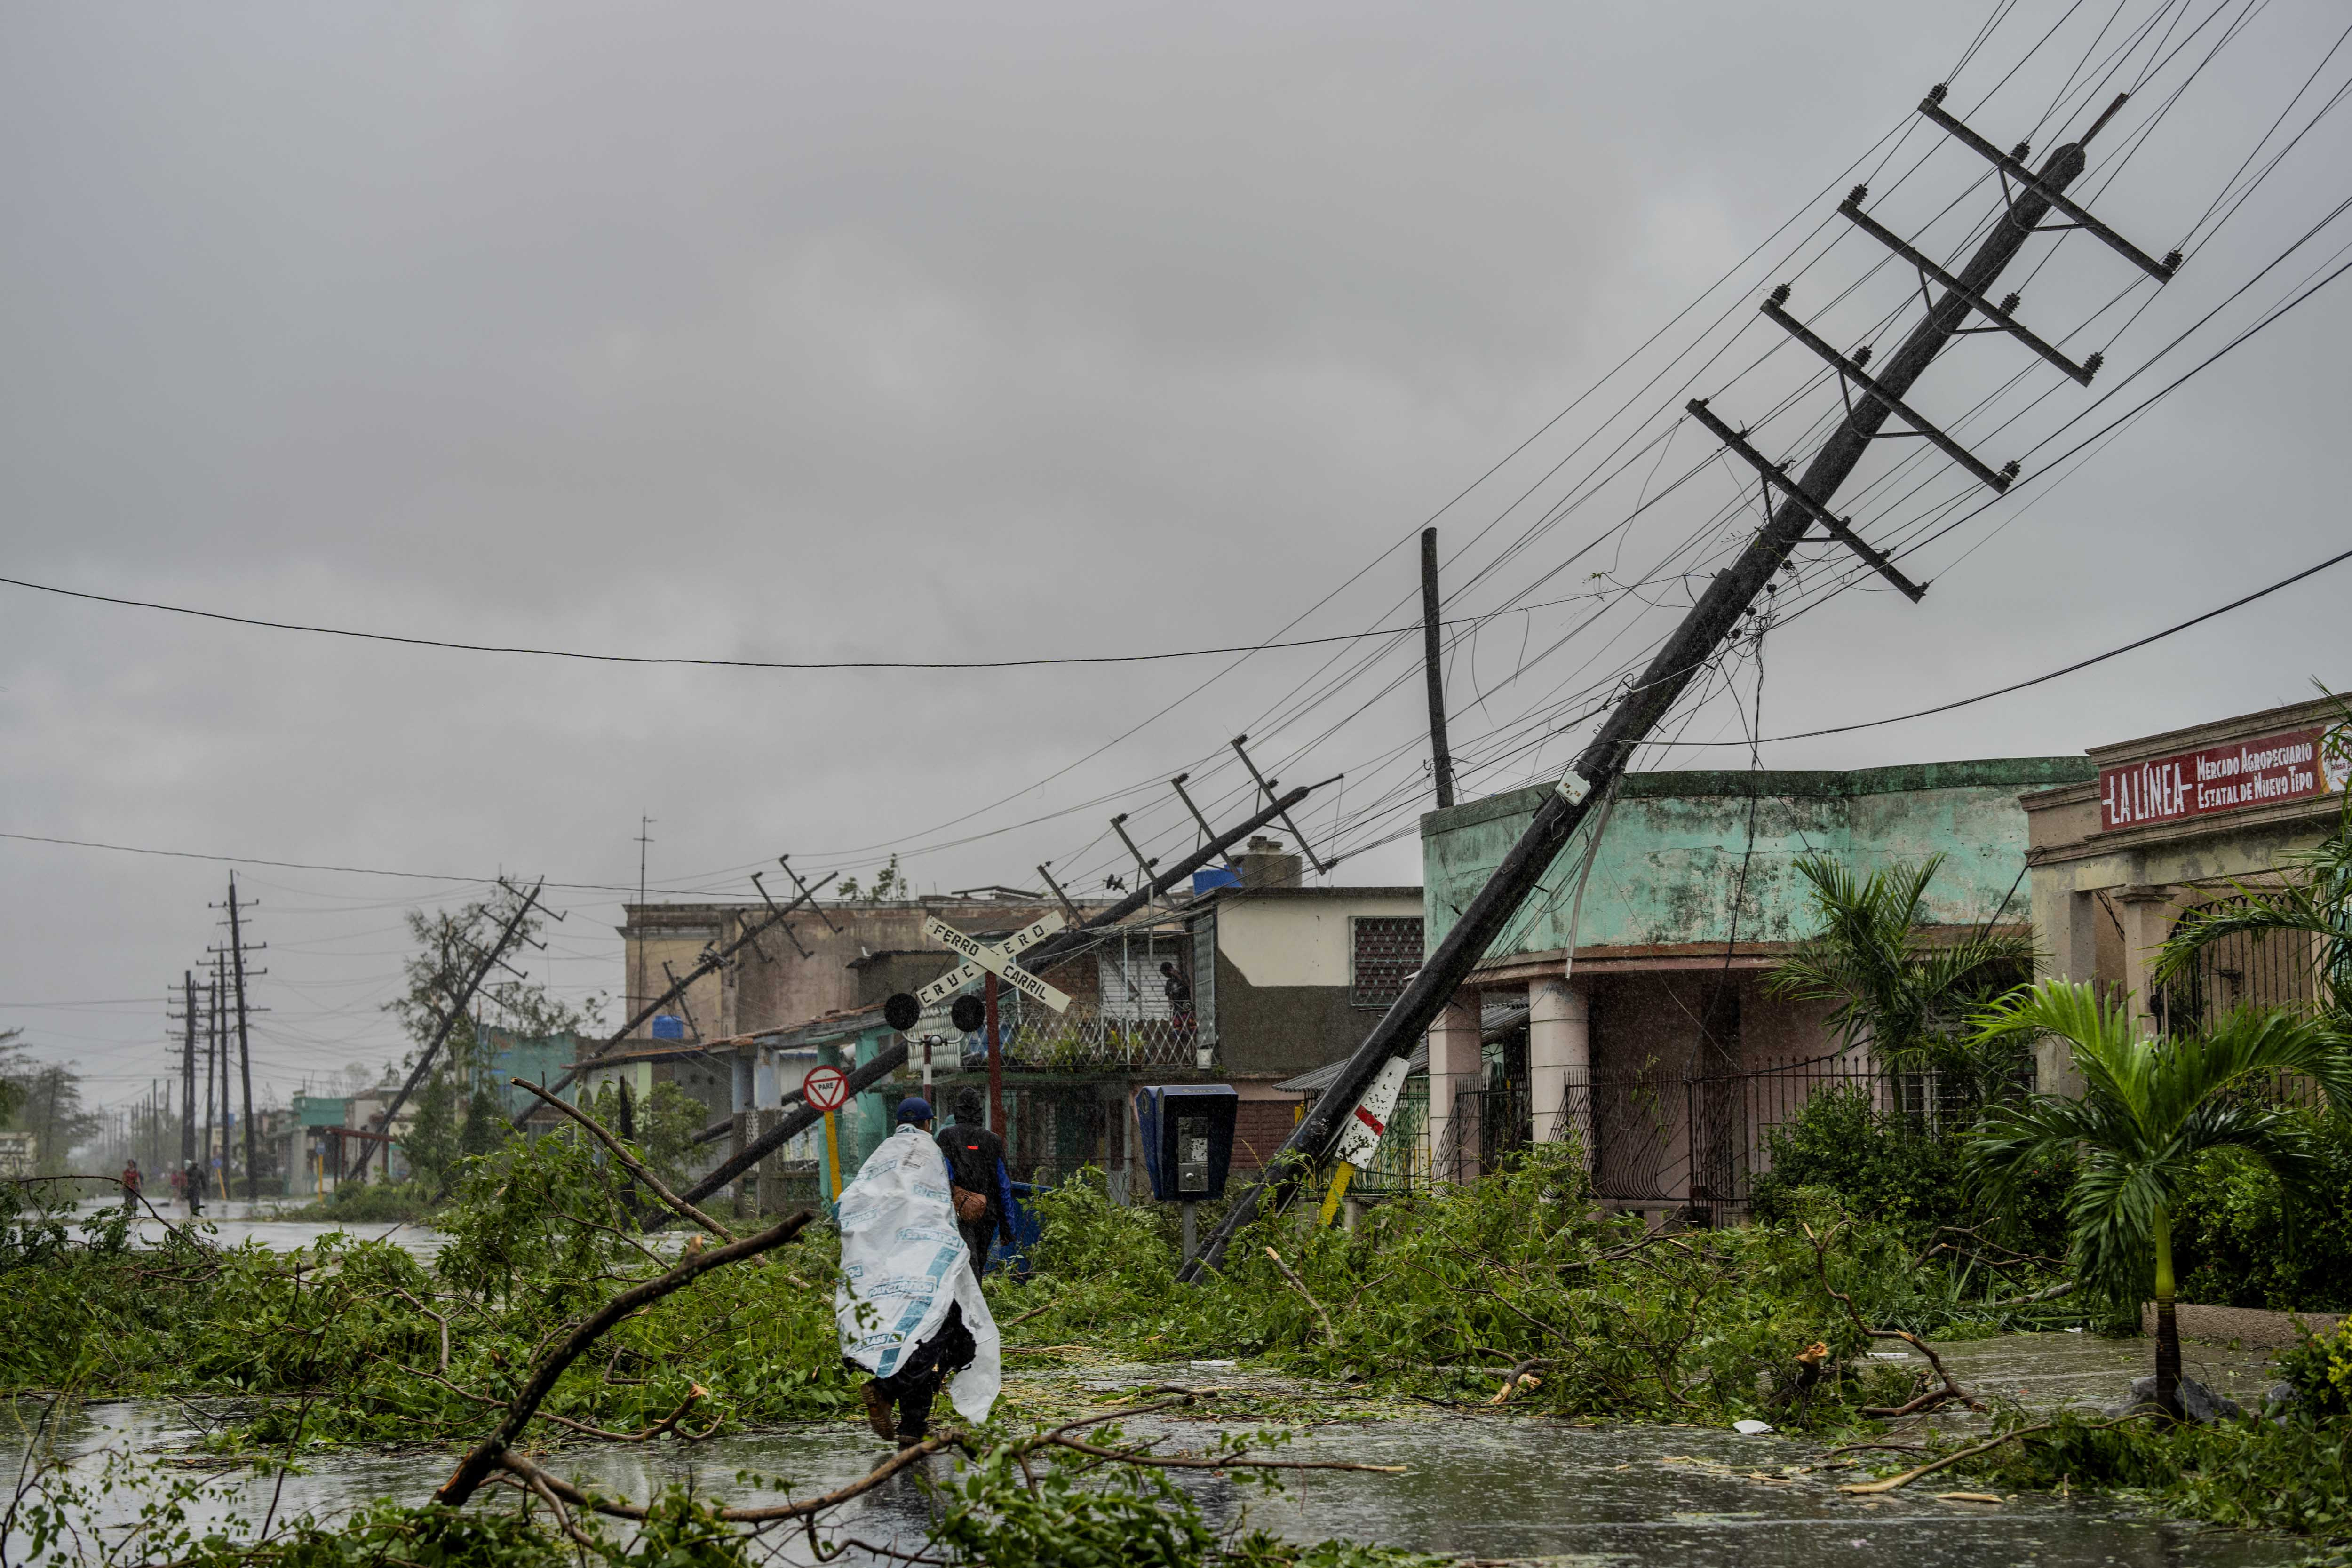 Postes de servicios públicos caídos y ramas caídas bordean una calle después de que el huracán Ian azotara Pinar del Río, Cuba, el martes 27 de septiembre de 2022. 